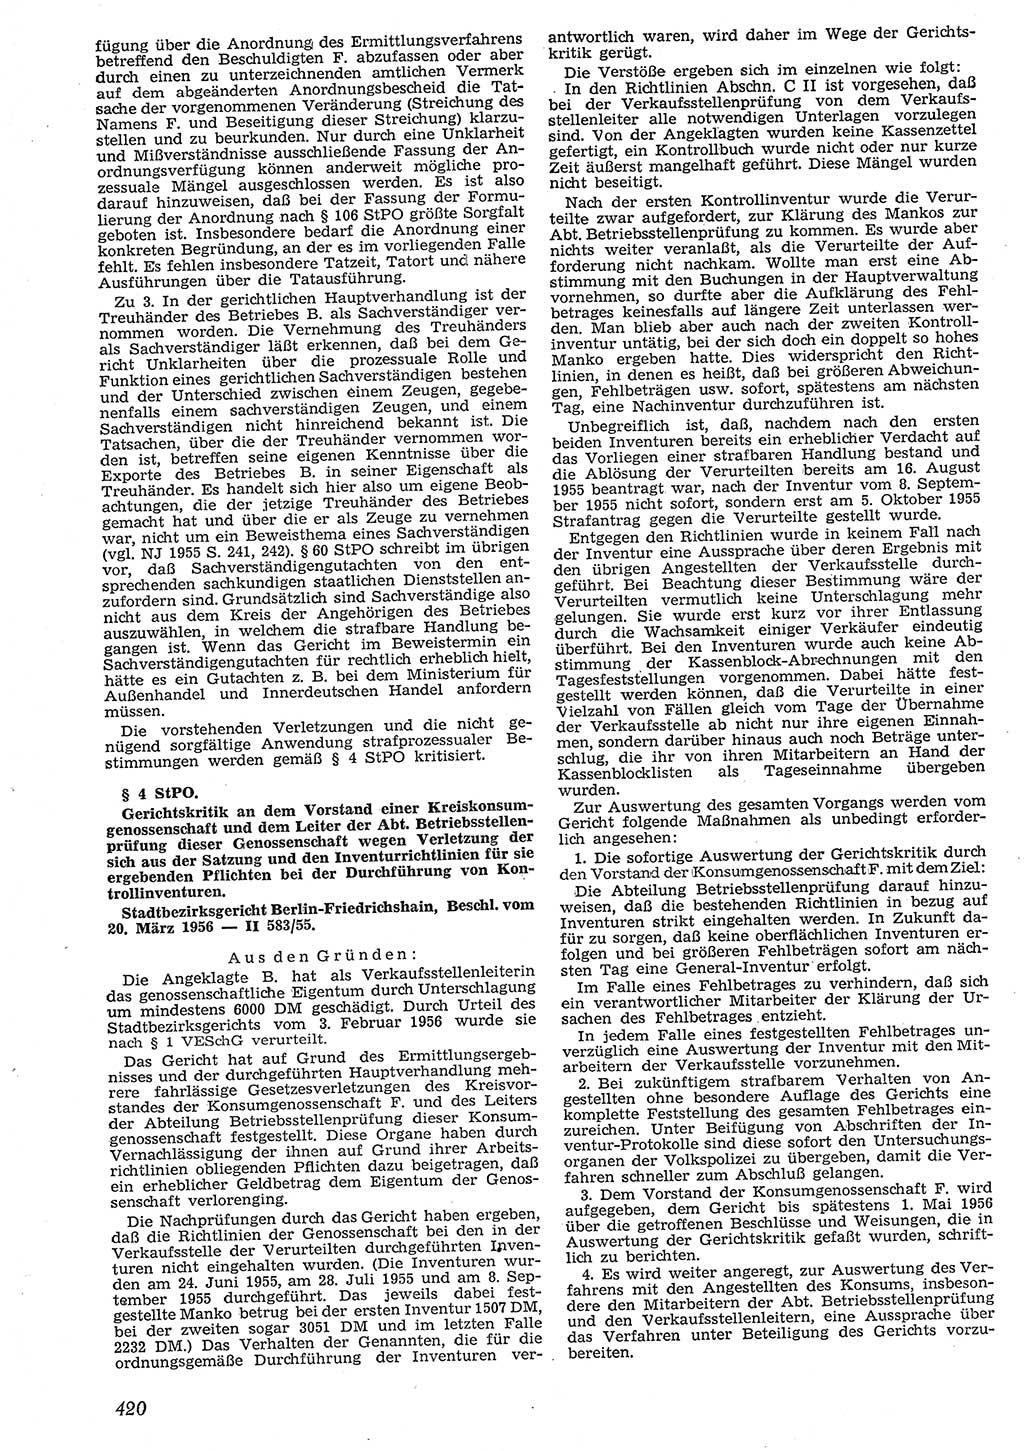 Neue Justiz (NJ), Zeitschrift für Recht und Rechtswissenschaft [Deutsche Demokratische Republik (DDR)], 10. Jahrgang 1956, Seite 420 (NJ DDR 1956, S. 420)